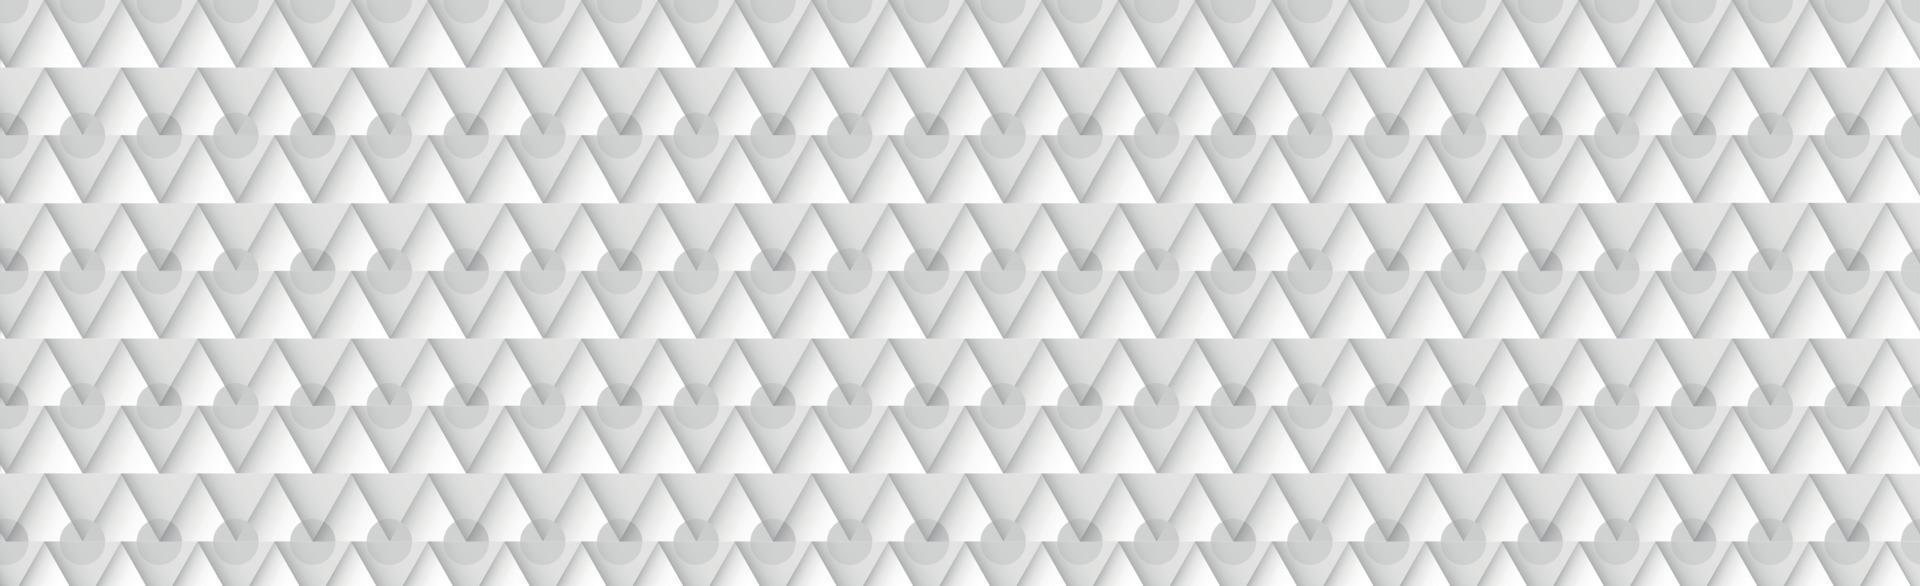 Fondo abstracto gris - rectángulos volumétricos blancos - vector